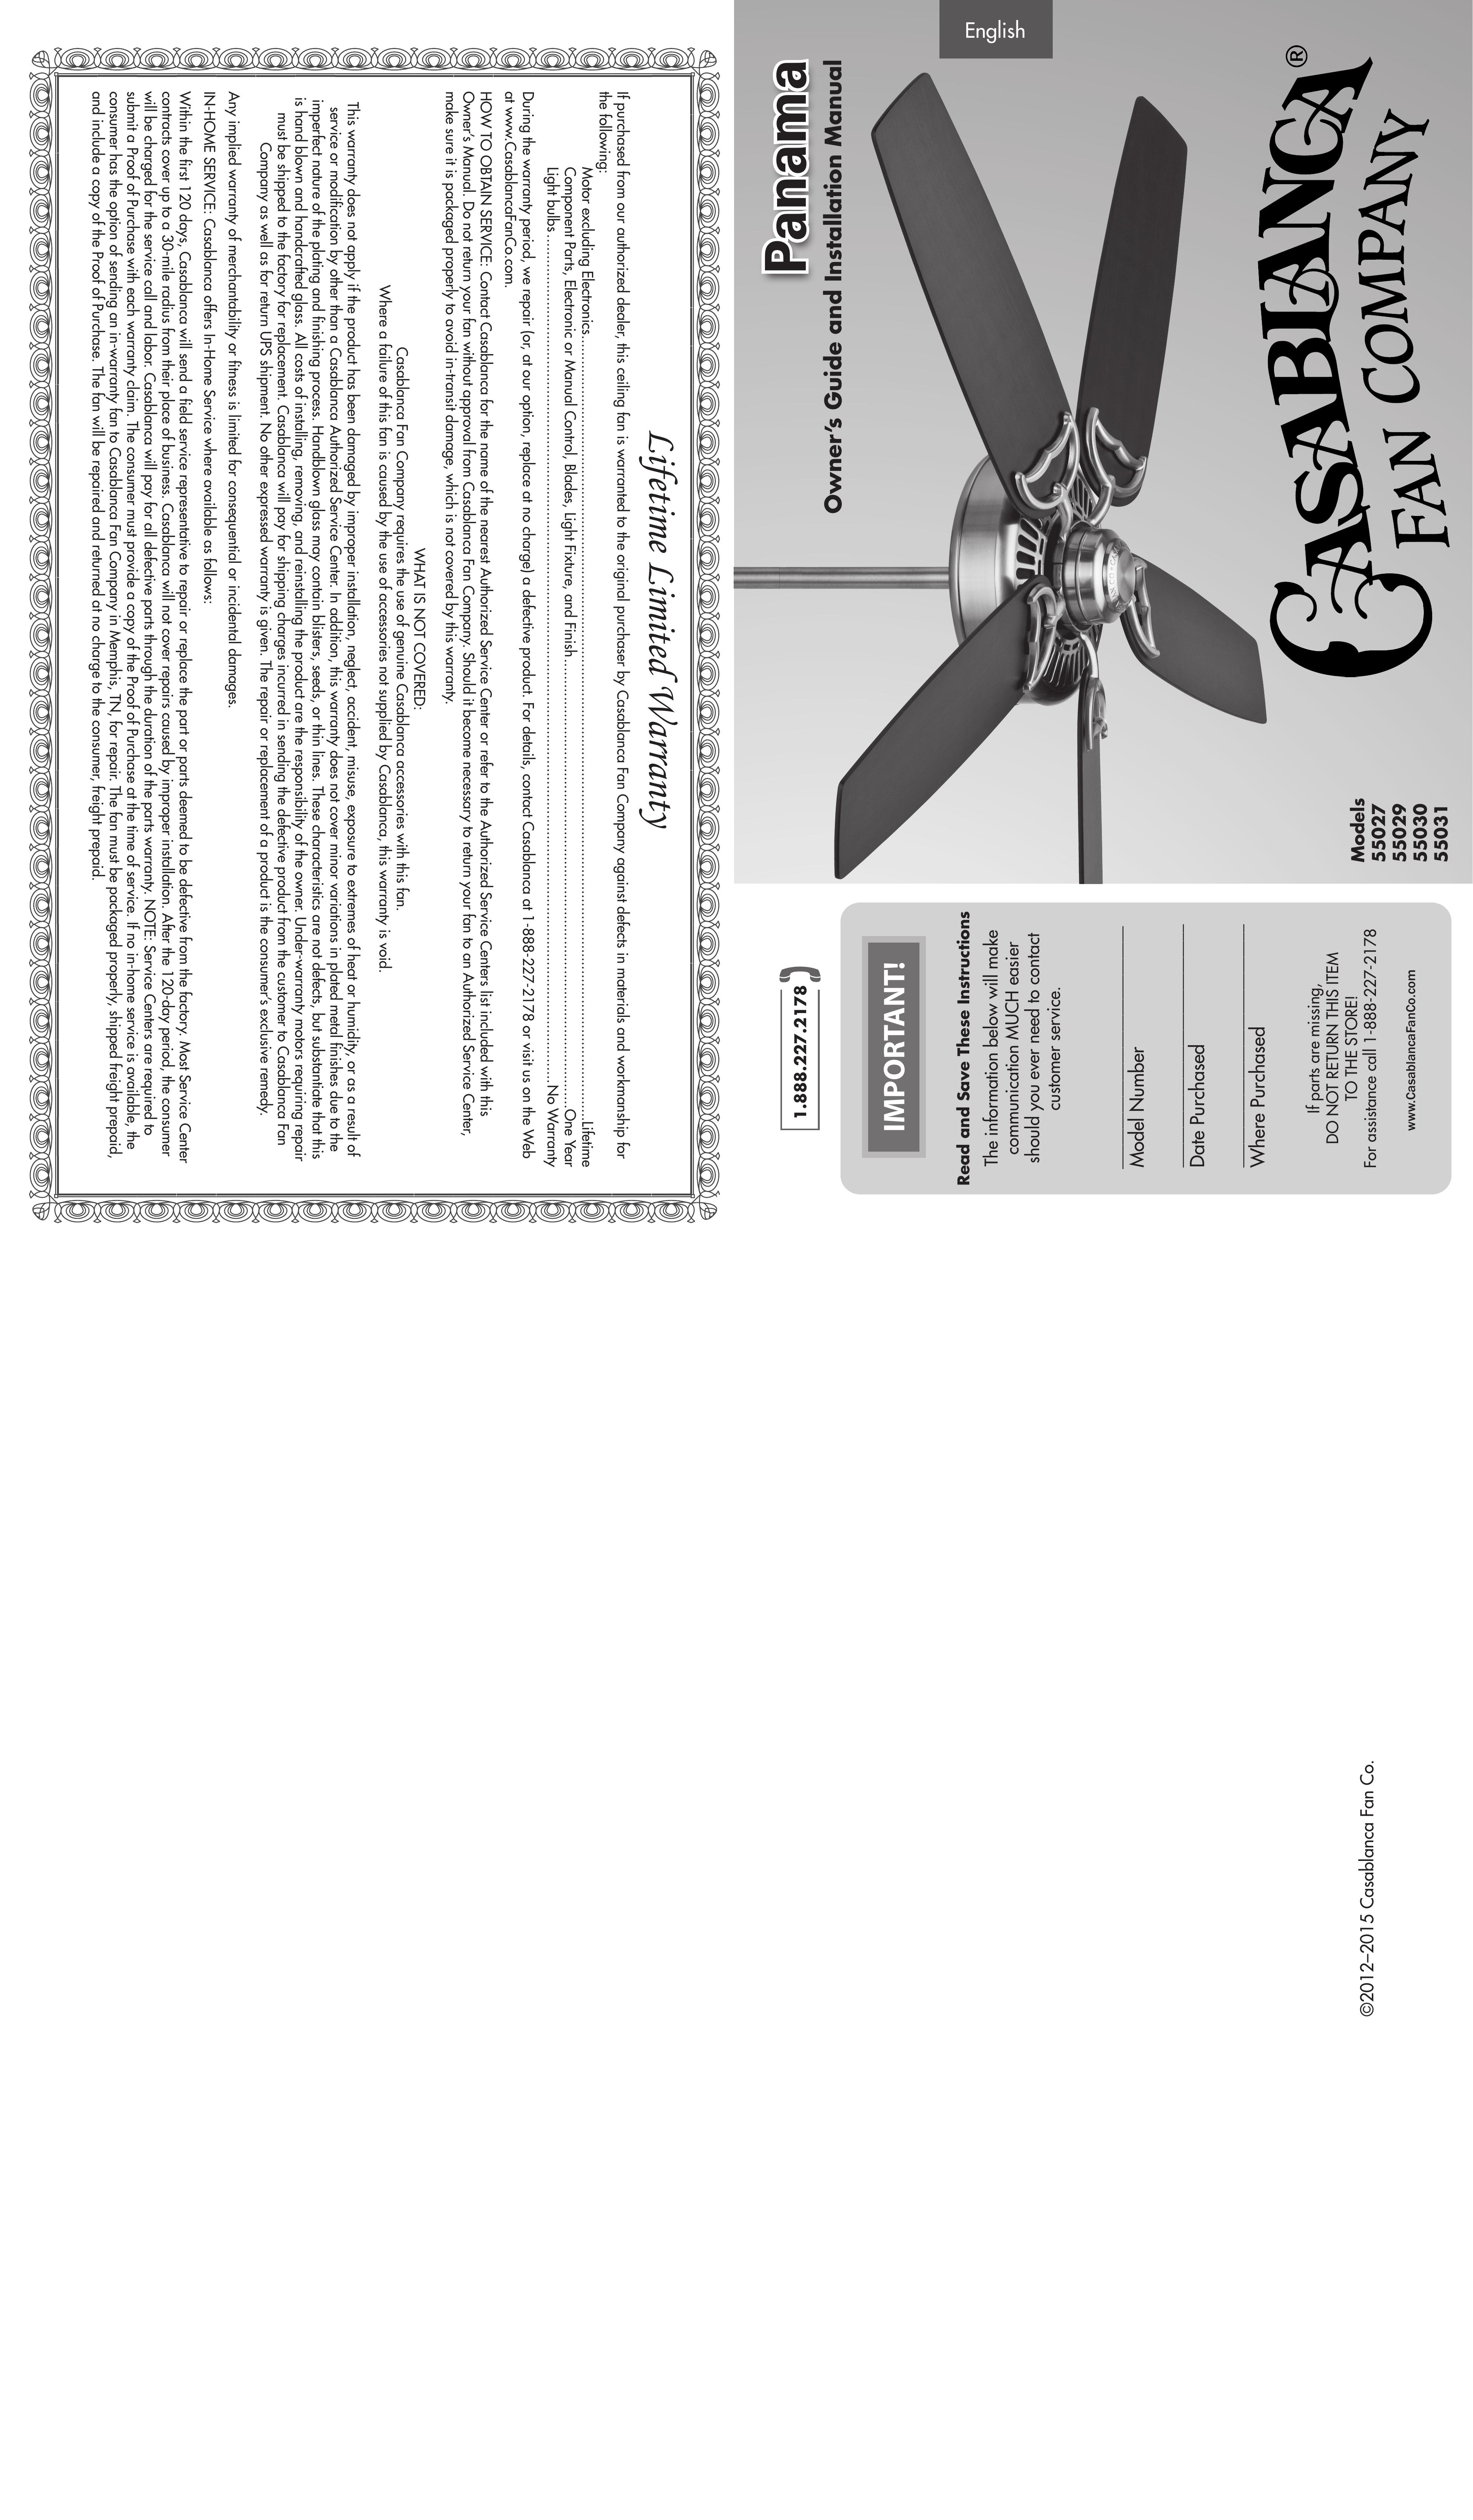 Casablanca Fan Company 55030 Outdoor Ceiling Fan User Manual